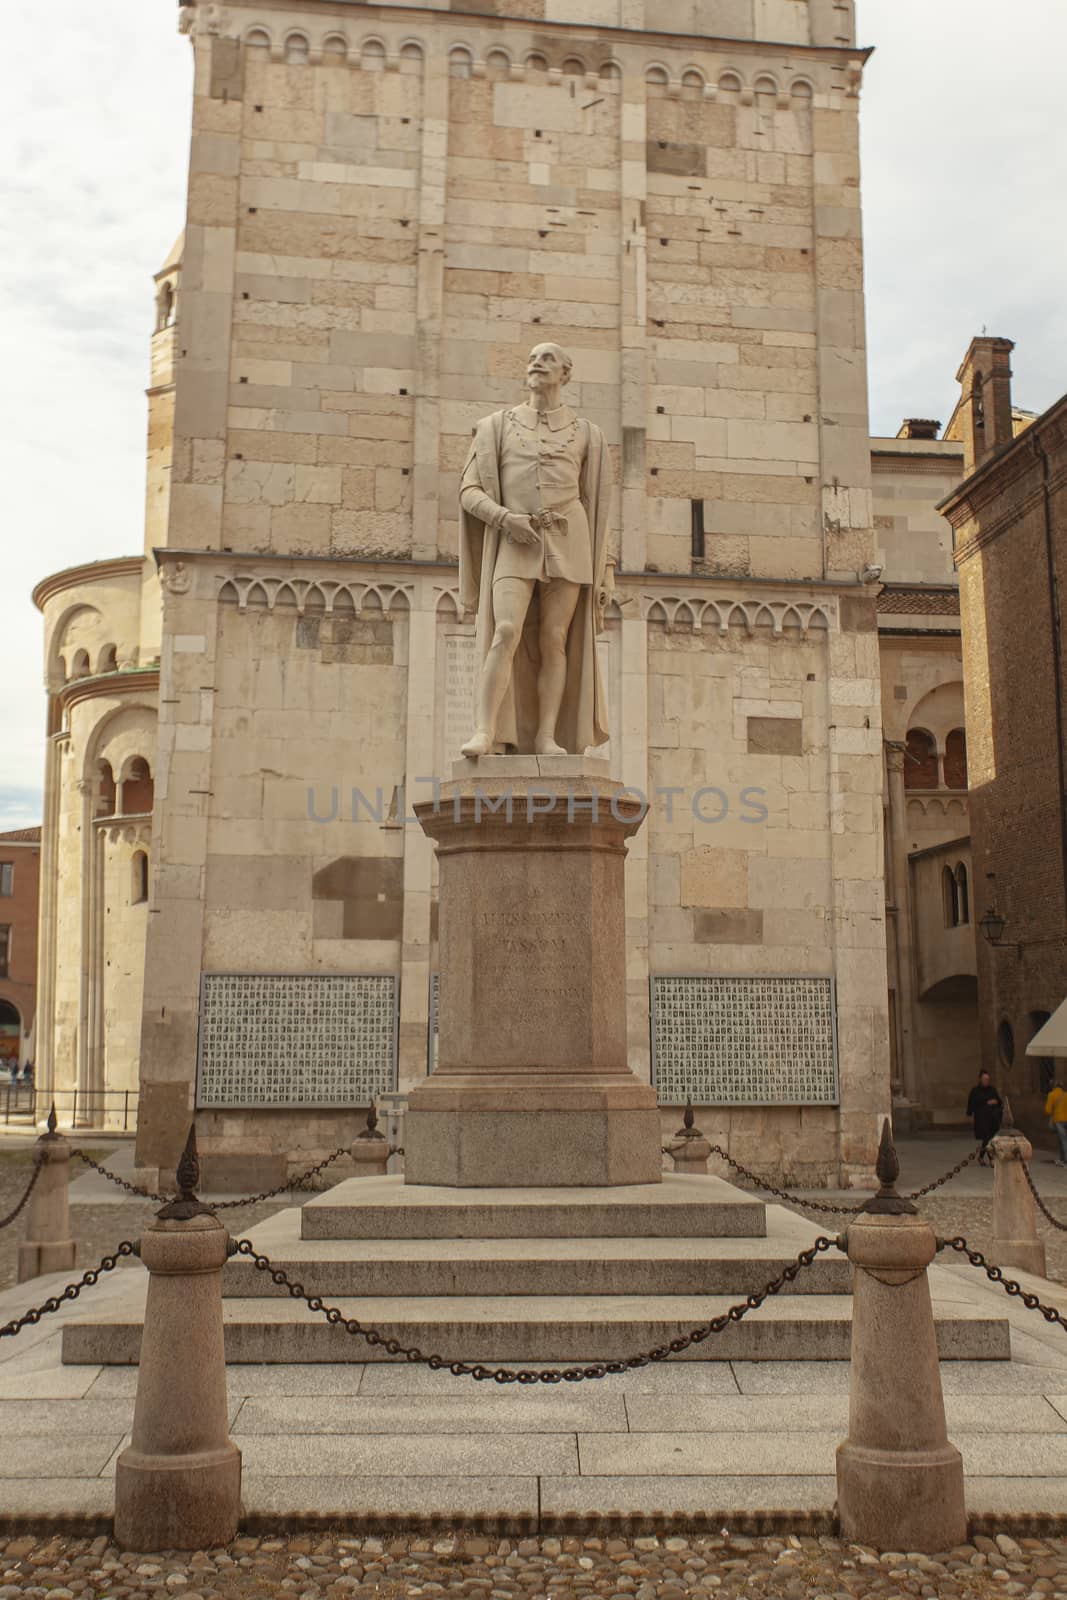 MODENA, ITALY 1 OCTOBER 2020: Alessandro Tassoni statue in Modena, Italy